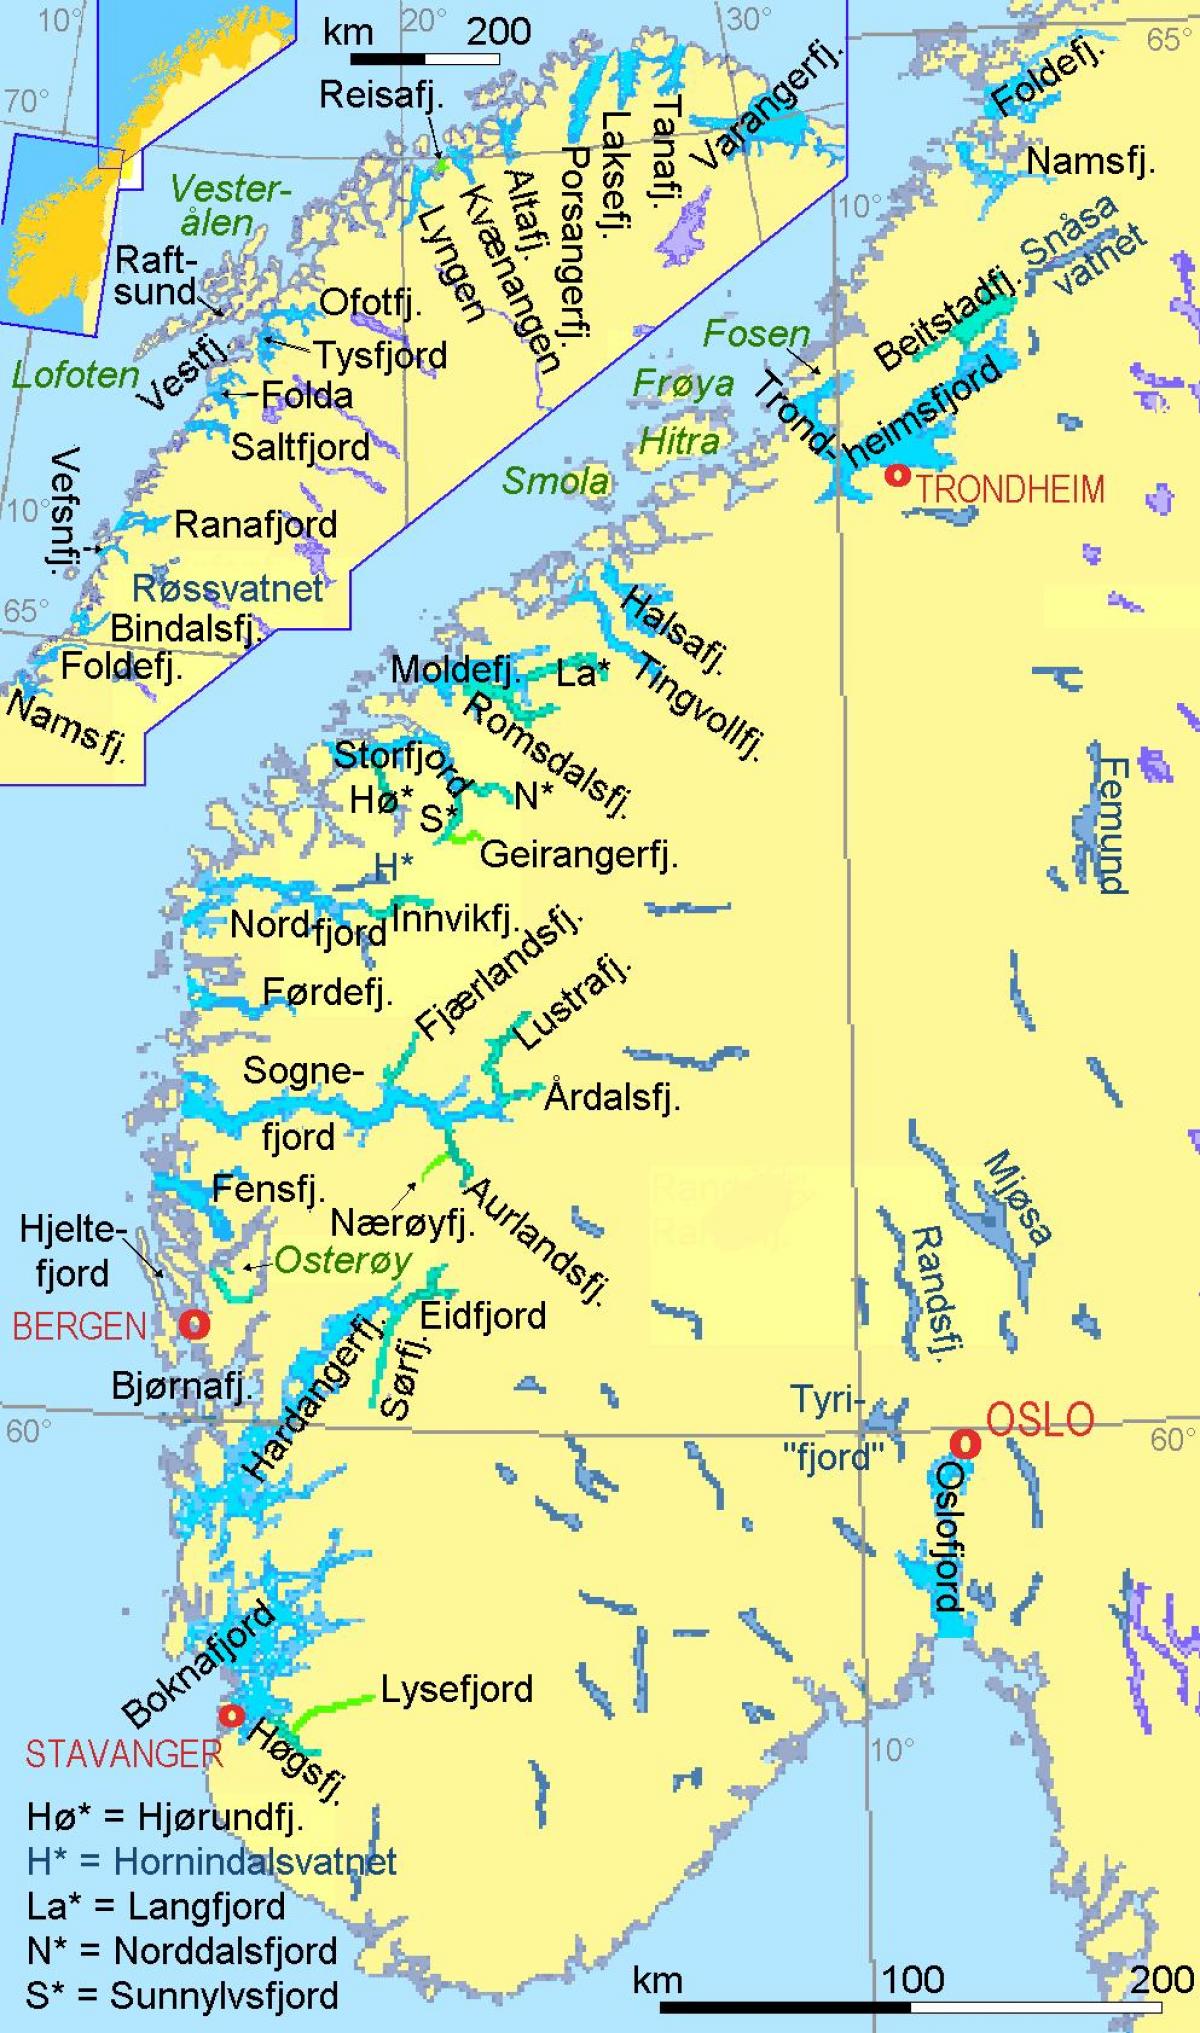 bản đồ của na Uy đang ở vịnh hẹp